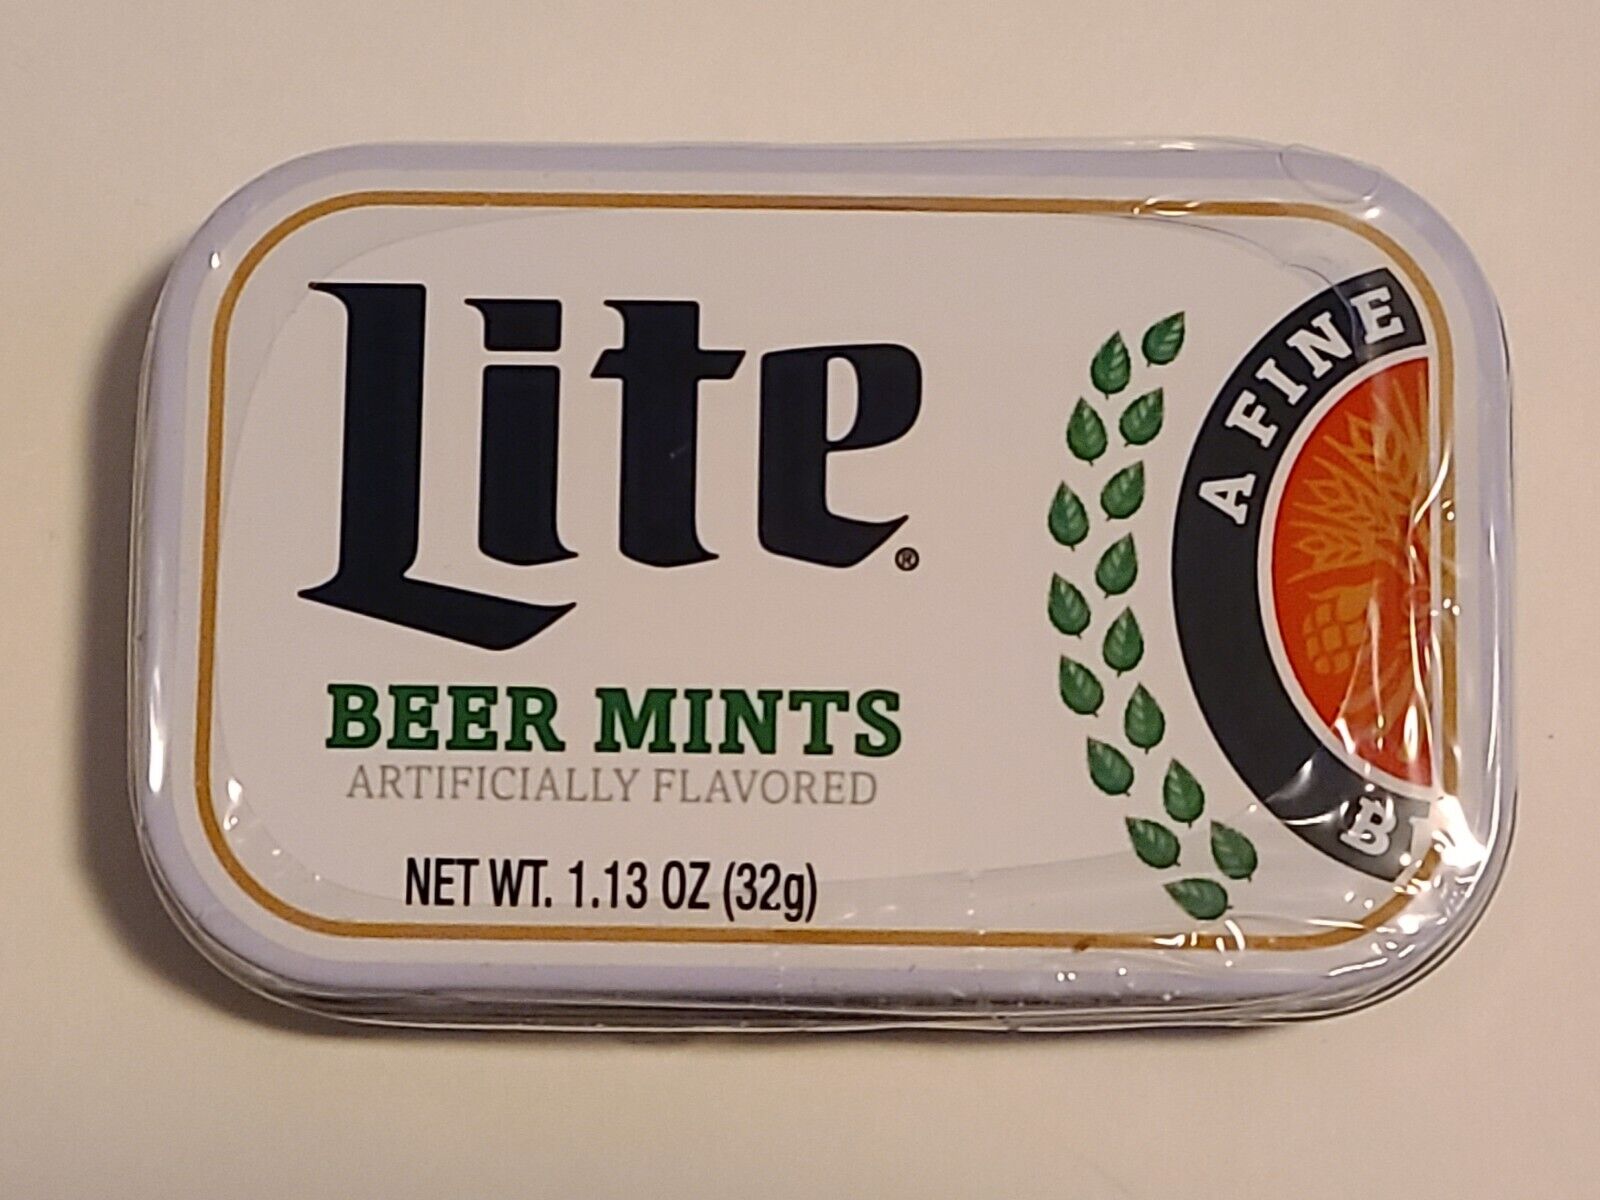 Miller Lite Beer Mints. Limited Edition